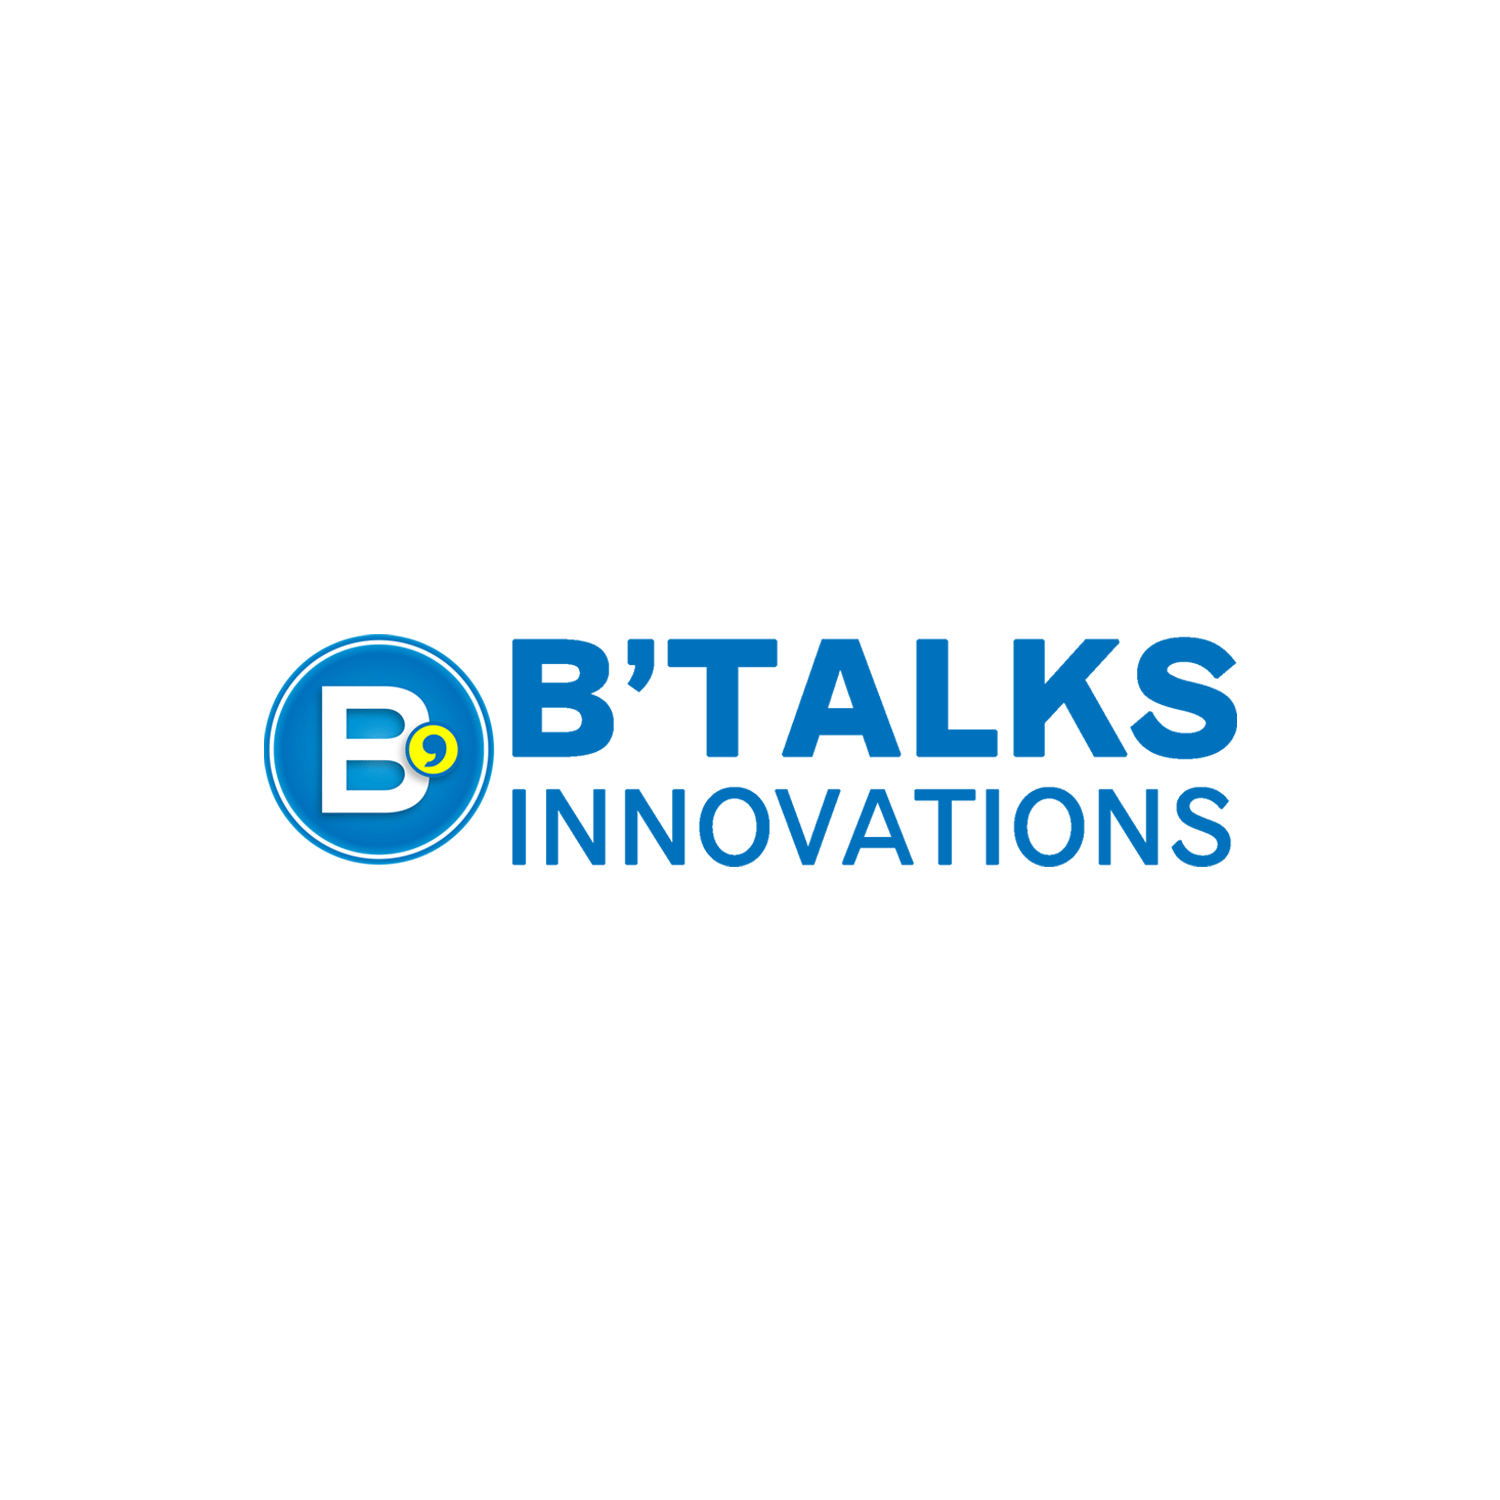 Btalks-Innovations